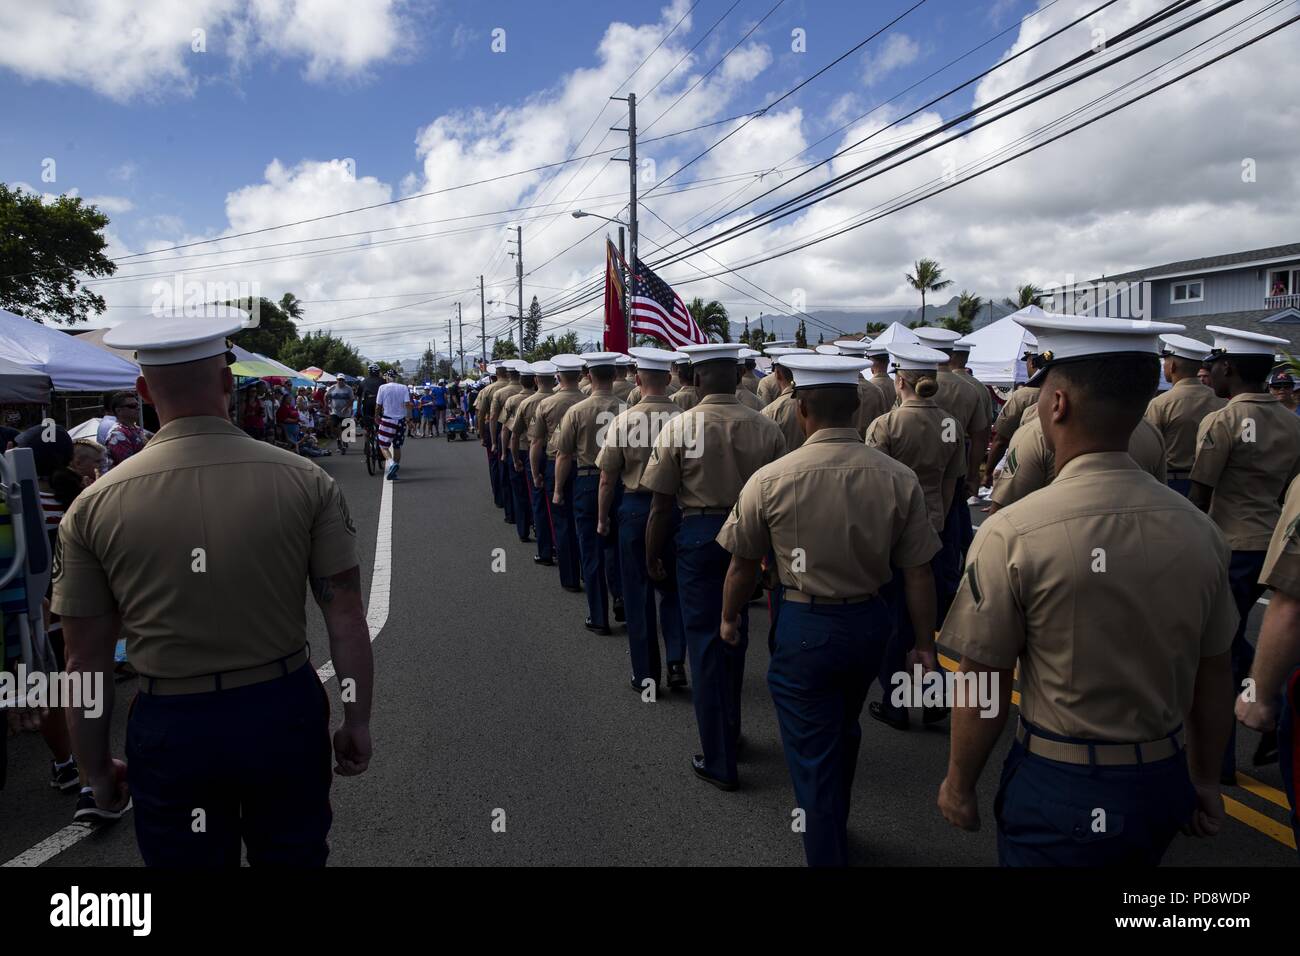 Stati Uniti Marines con Marine Corps base Hawaii, marzo in Kailua Independence Day Parade, Hawaii, Jul. 4, 2018, 4 luglio 2018. La zona di Kailua ha tenuto parade di anno in anno per 72 anni, celebrando l'America l'indipendenza e la comunità locale. (U.S. Marine Corps Foto di Sgt. Alex Kouns). () Foto Stock